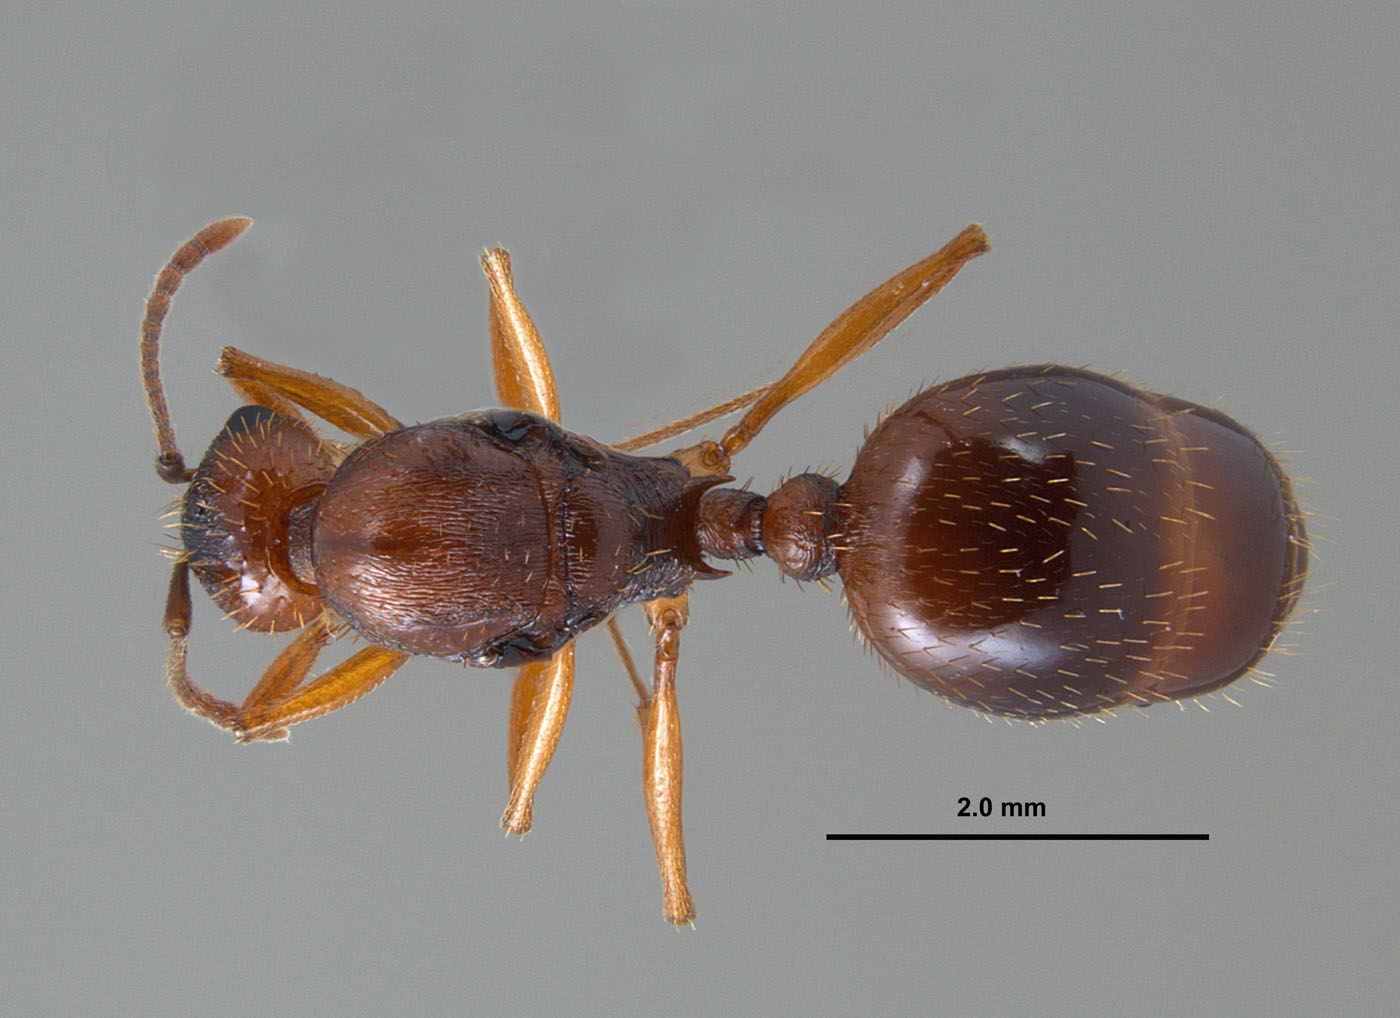 Aphaenogaster carolinensis queen dorsum